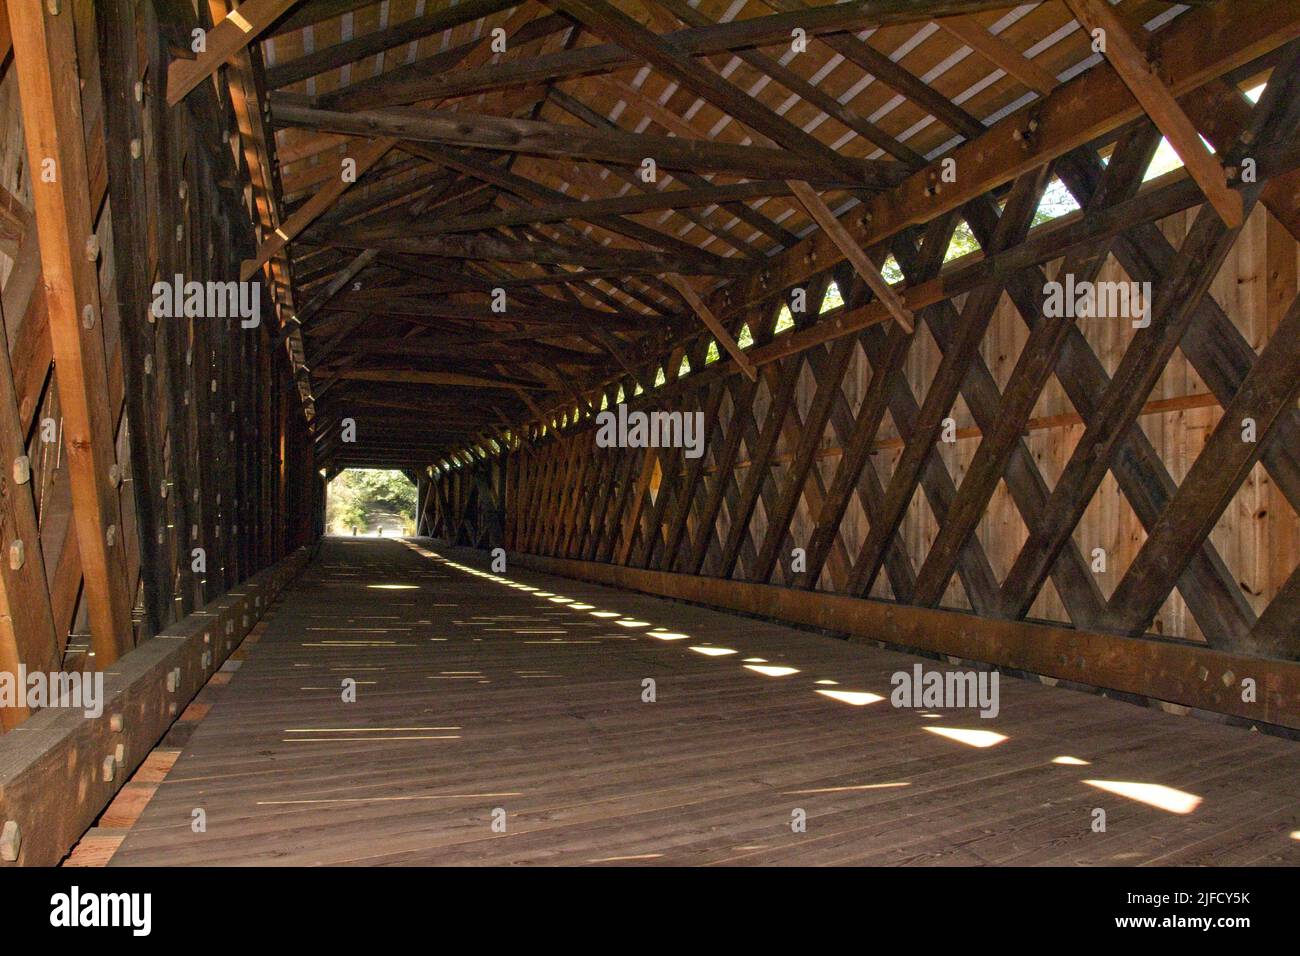 Sous couverture : conception architecturale de l'intérieur du long pont Scott à Townshend, Vermont. Poutres de lumière, d'ombre et de bois. Construit en 1870. Banque D'Images